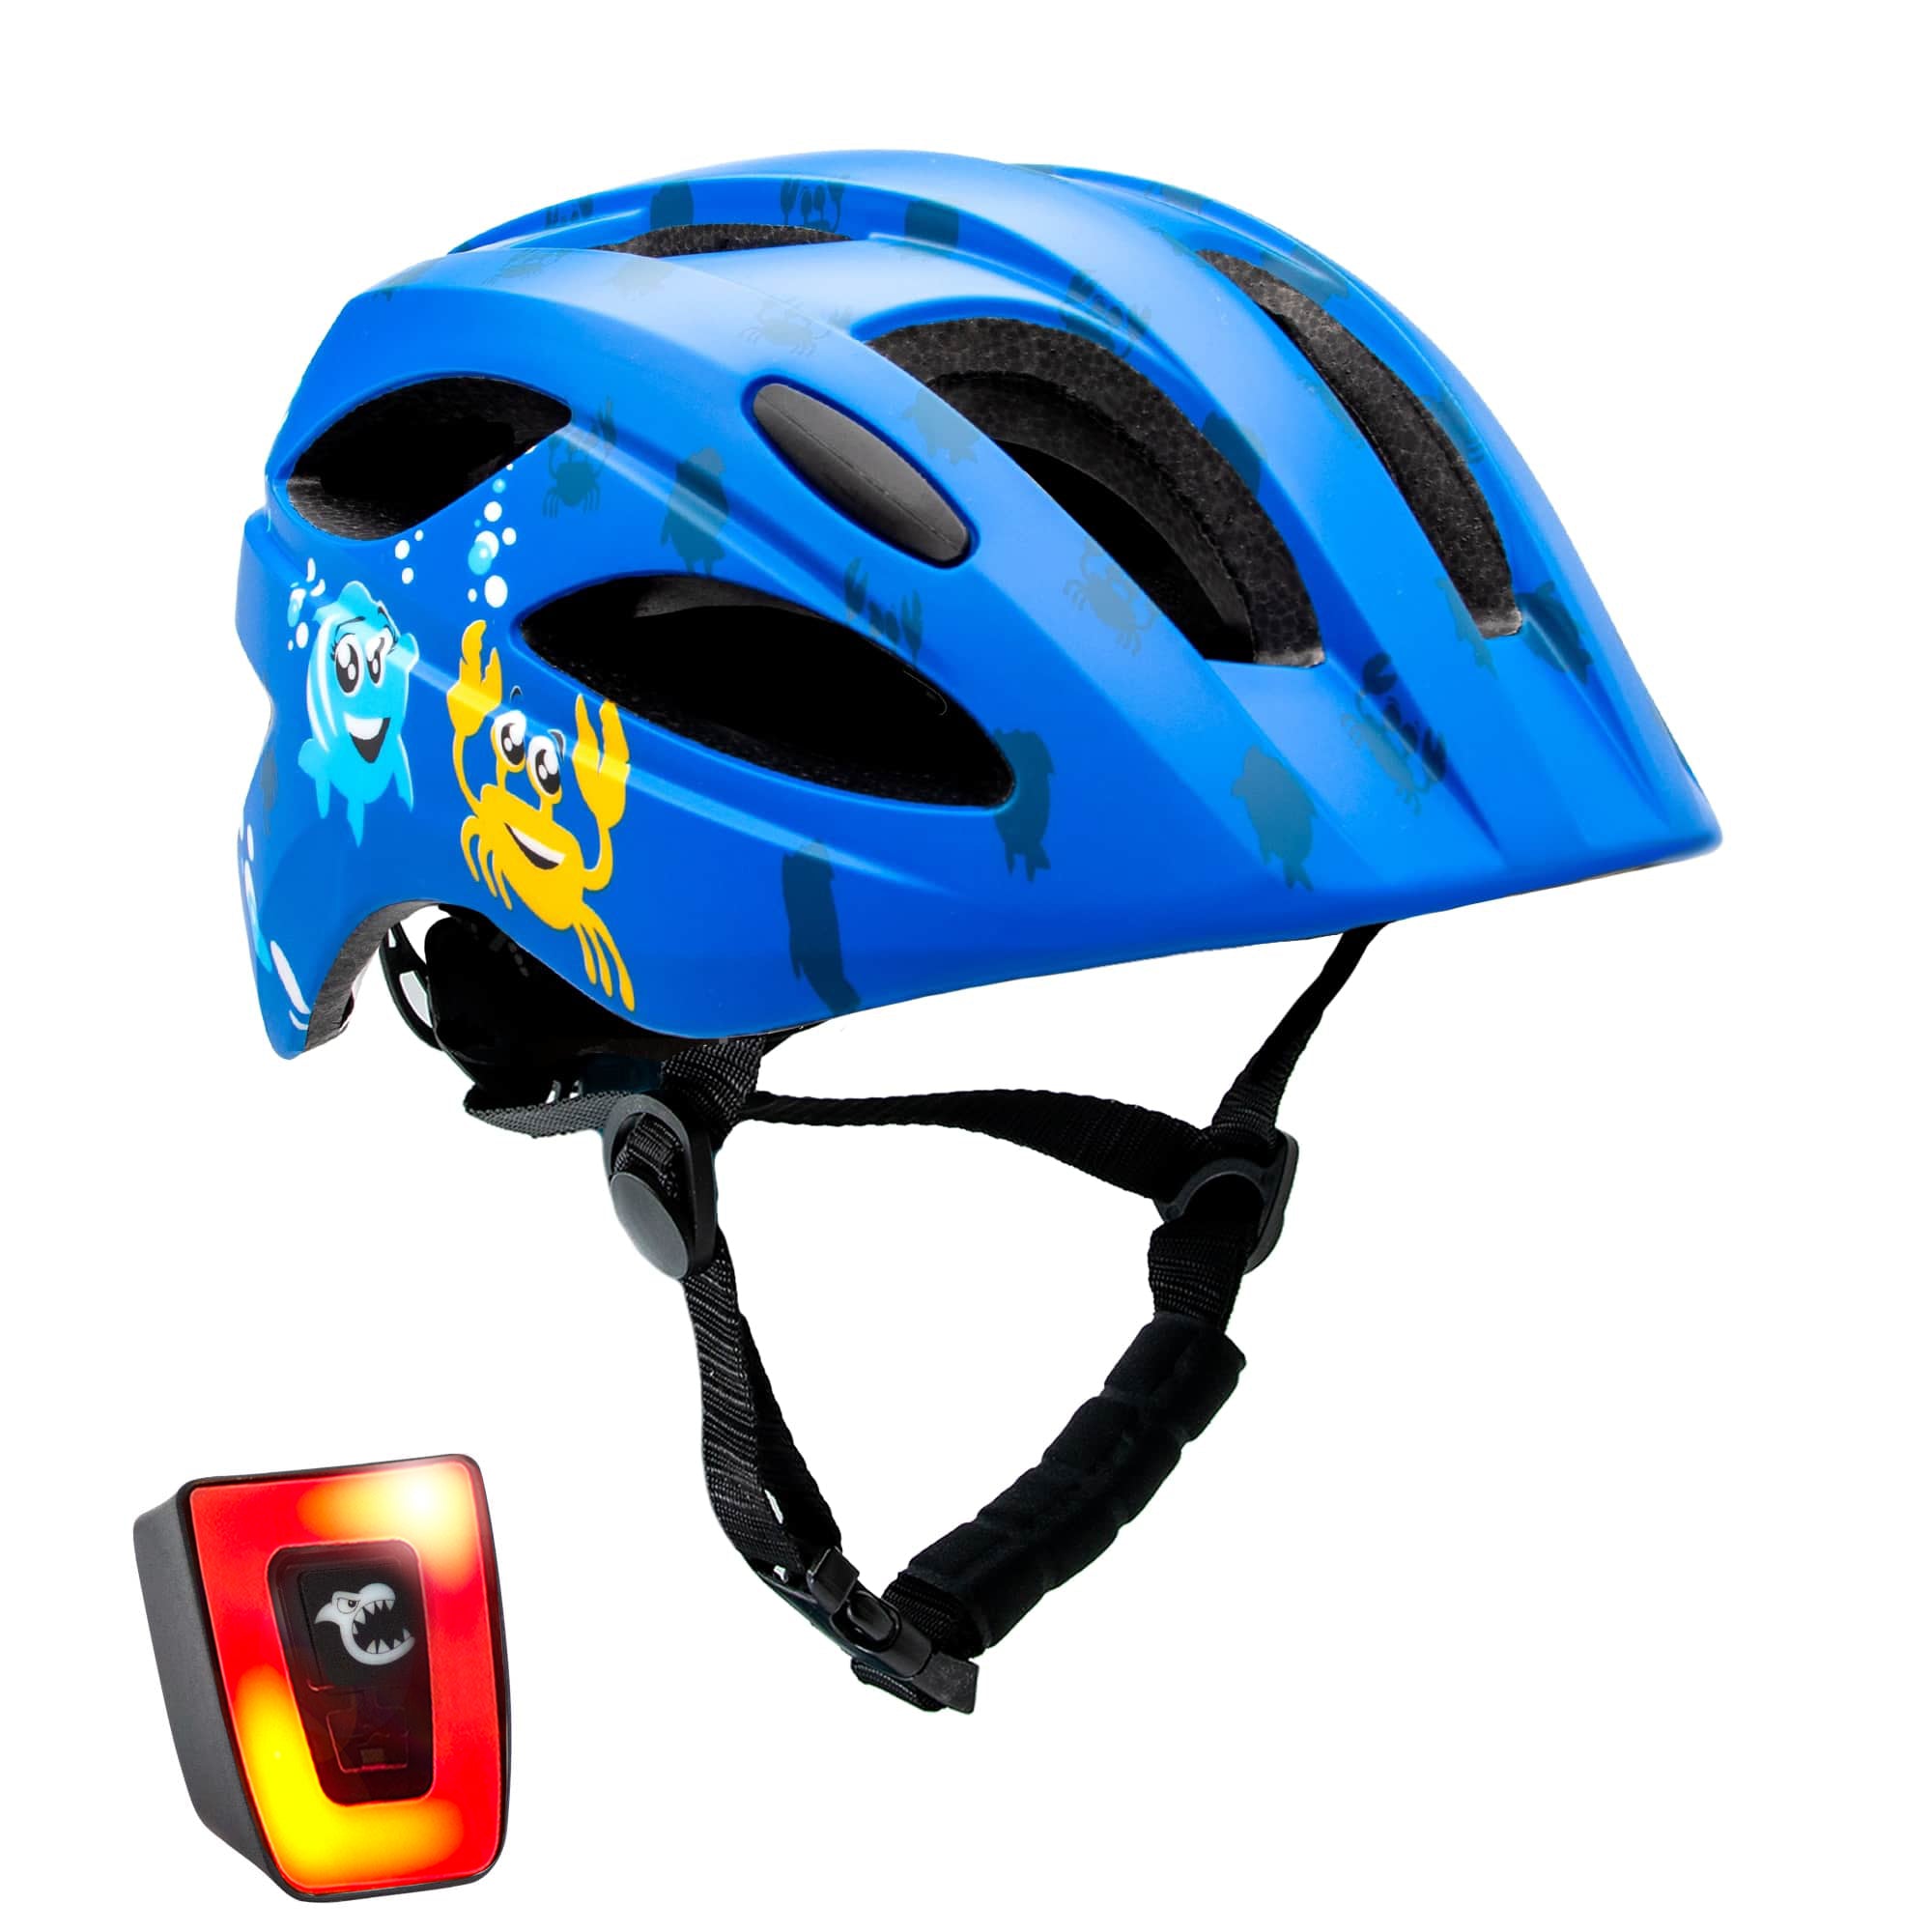 Sea Bicycle Helmet - Blue  pack